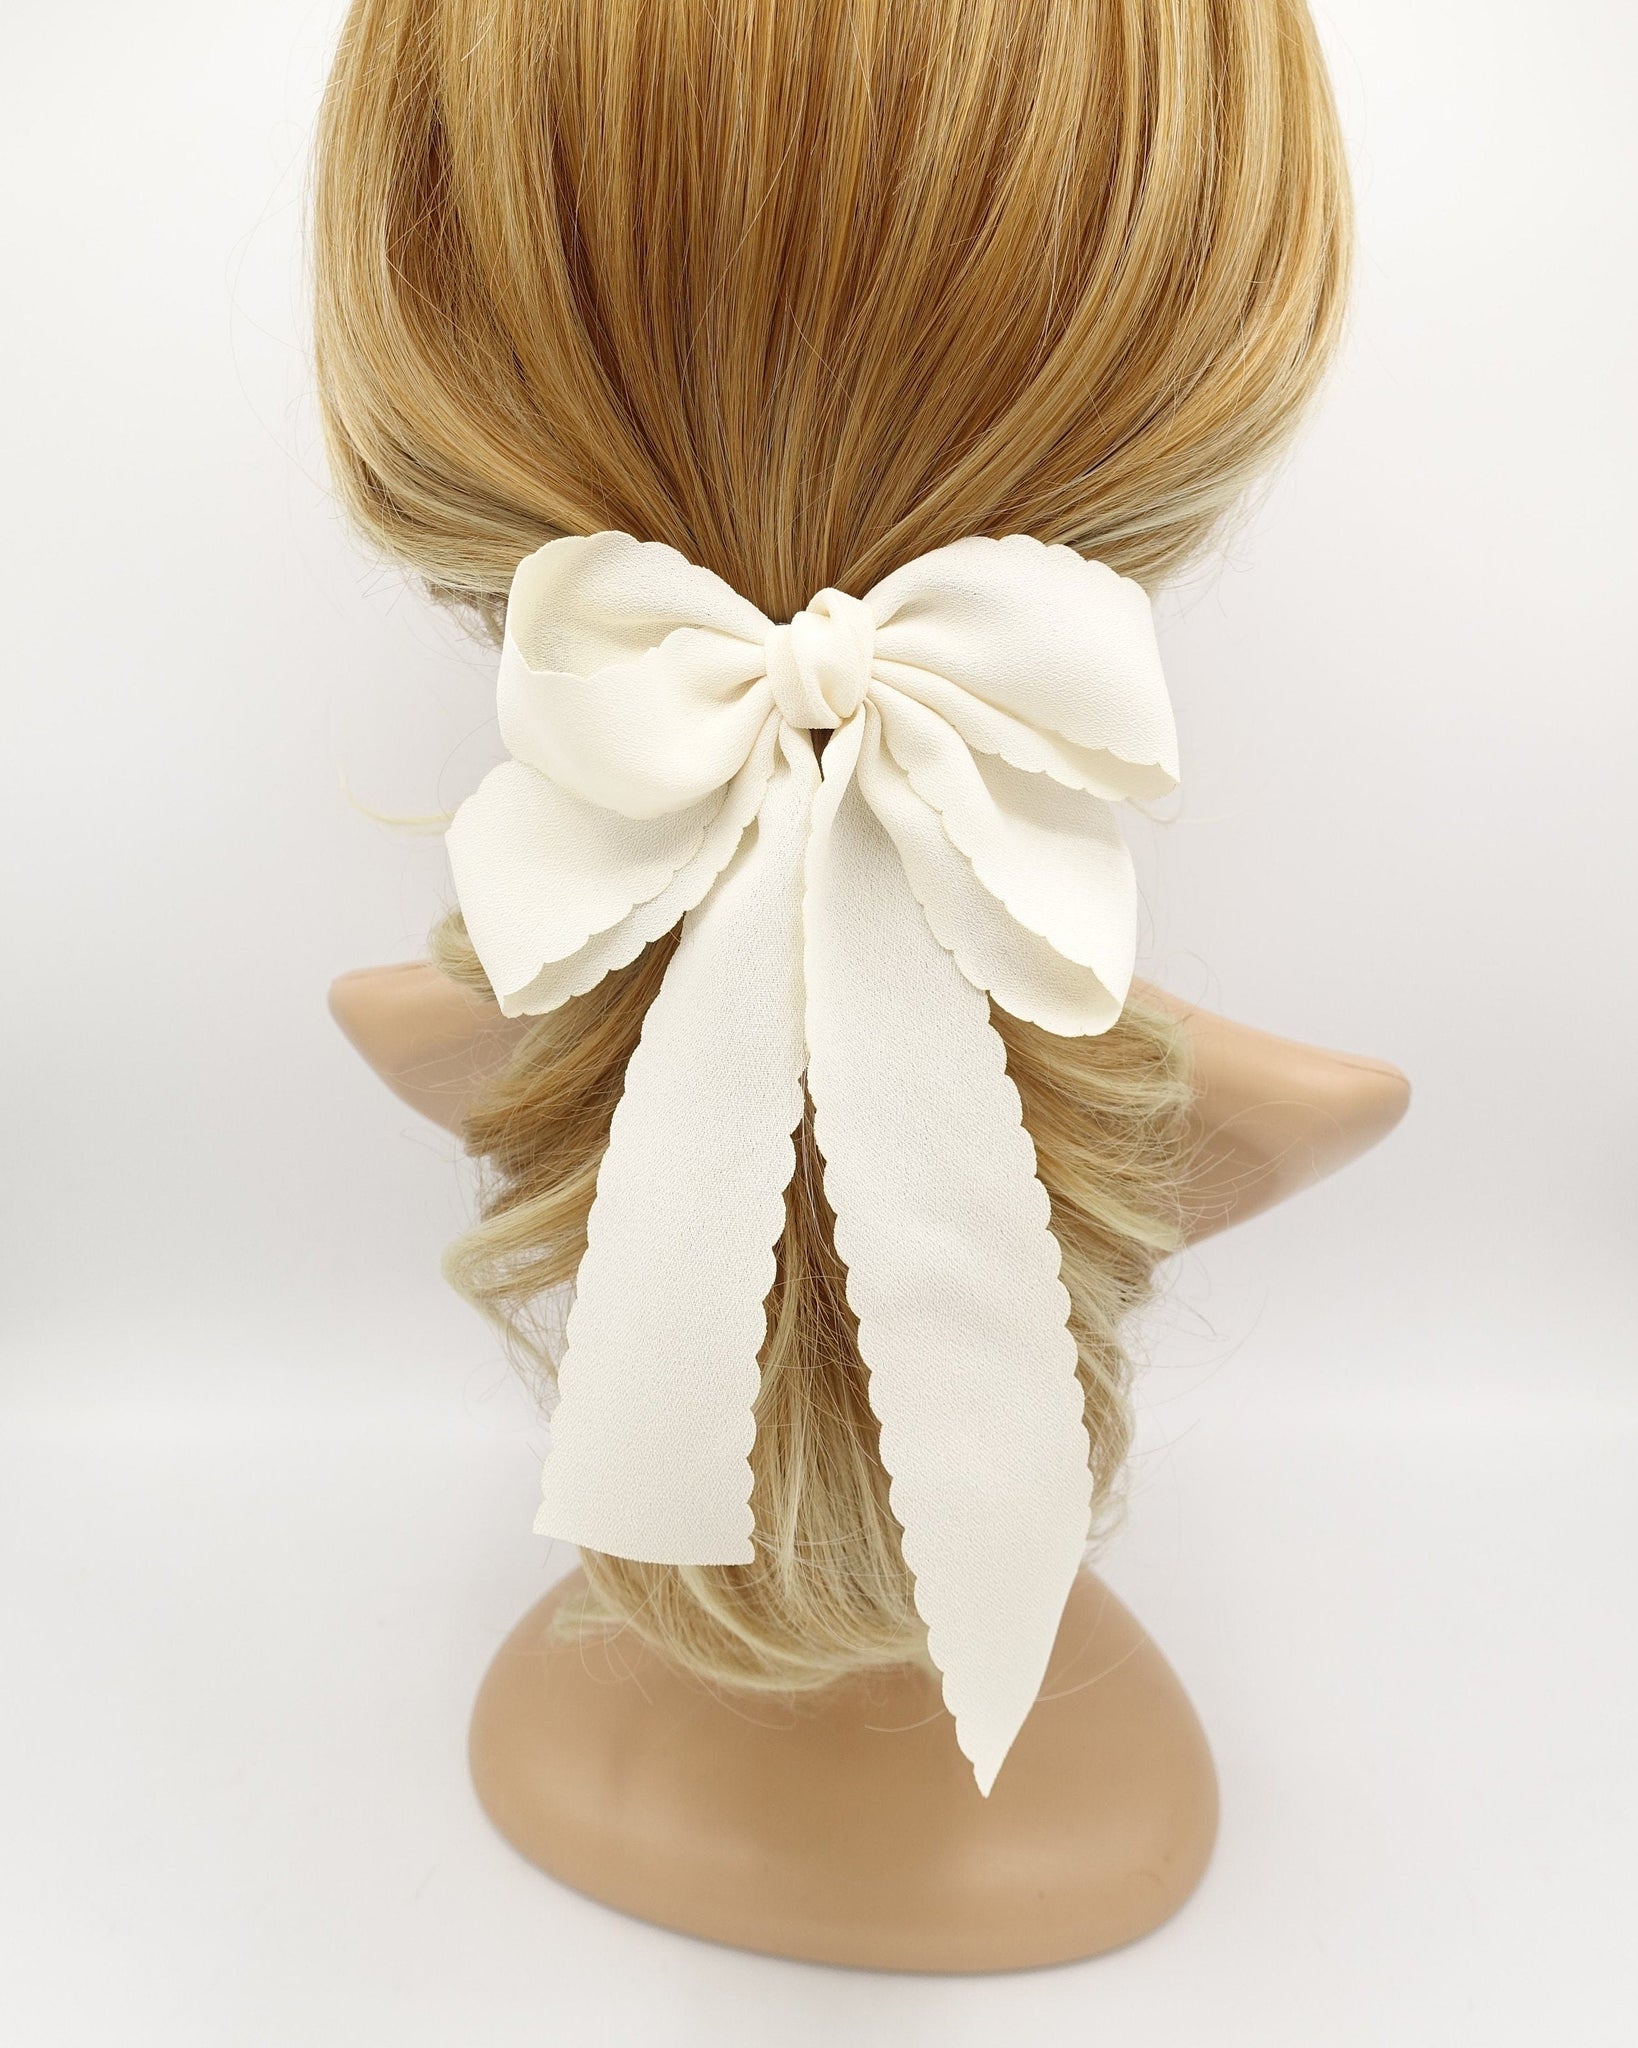 veryshine.com Barrette (Bow) Cream white wave edge hair bow long tail hair barrette women hair accessory